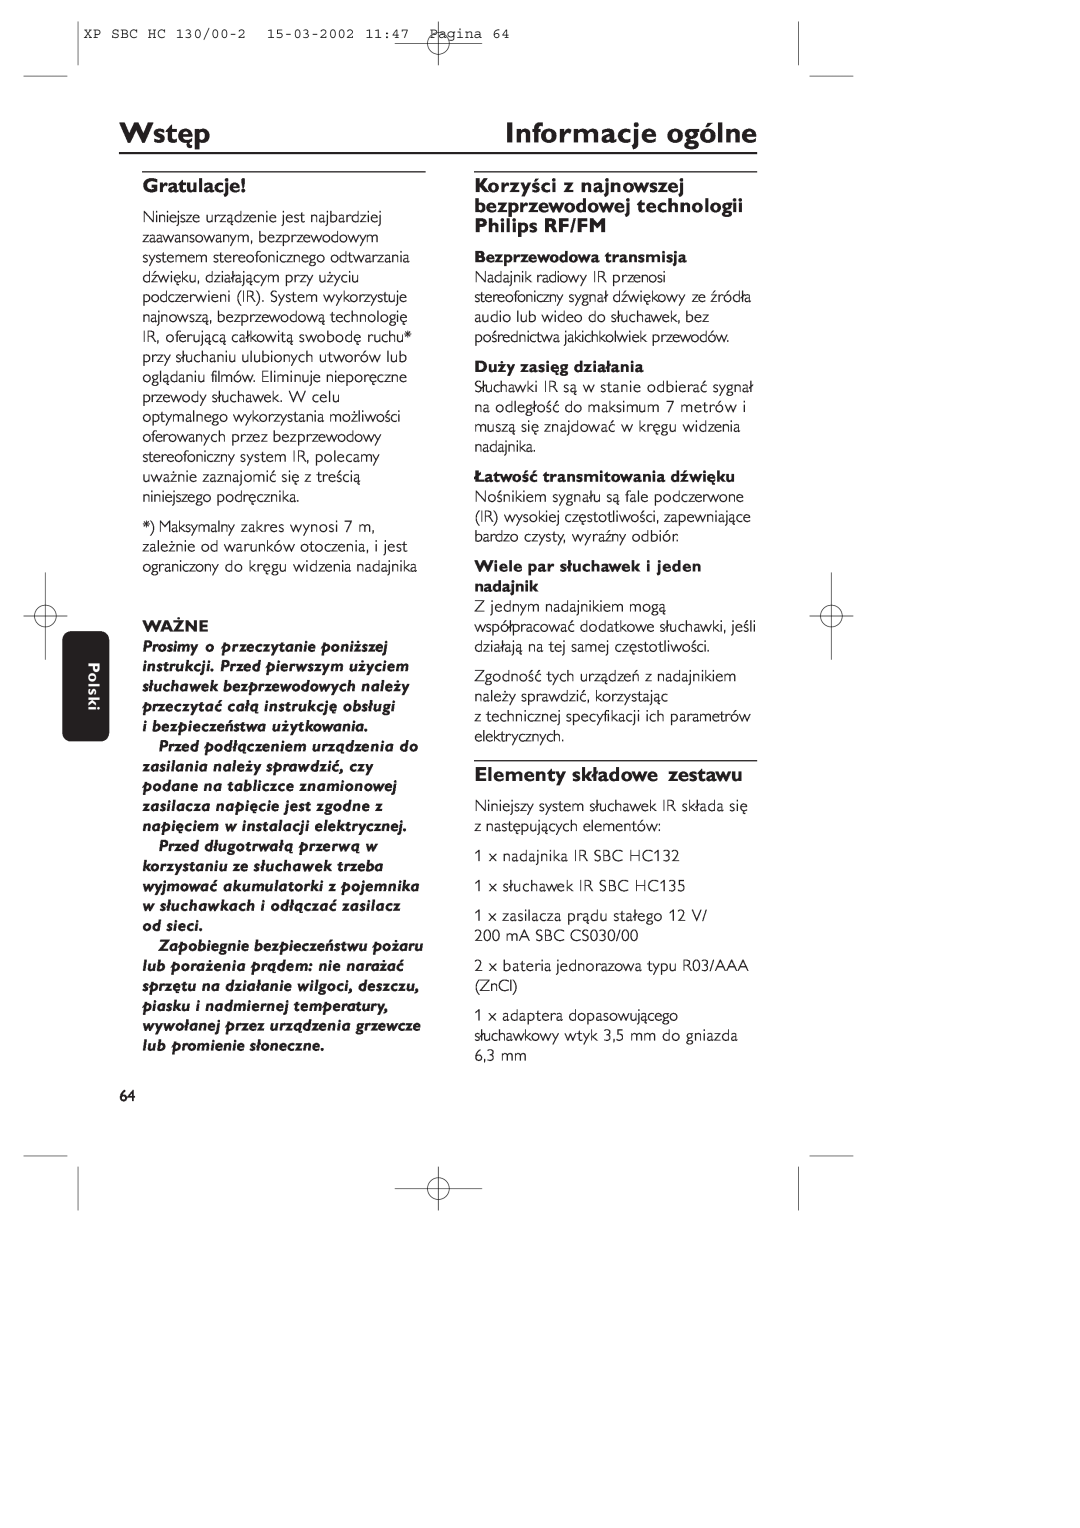 Philips SBC HC130 Wstęp, Informacje ogólne, Gratulacje, Elementy składowe zestawu, Polski, Ważne, Bezprzewodowa transmisja 